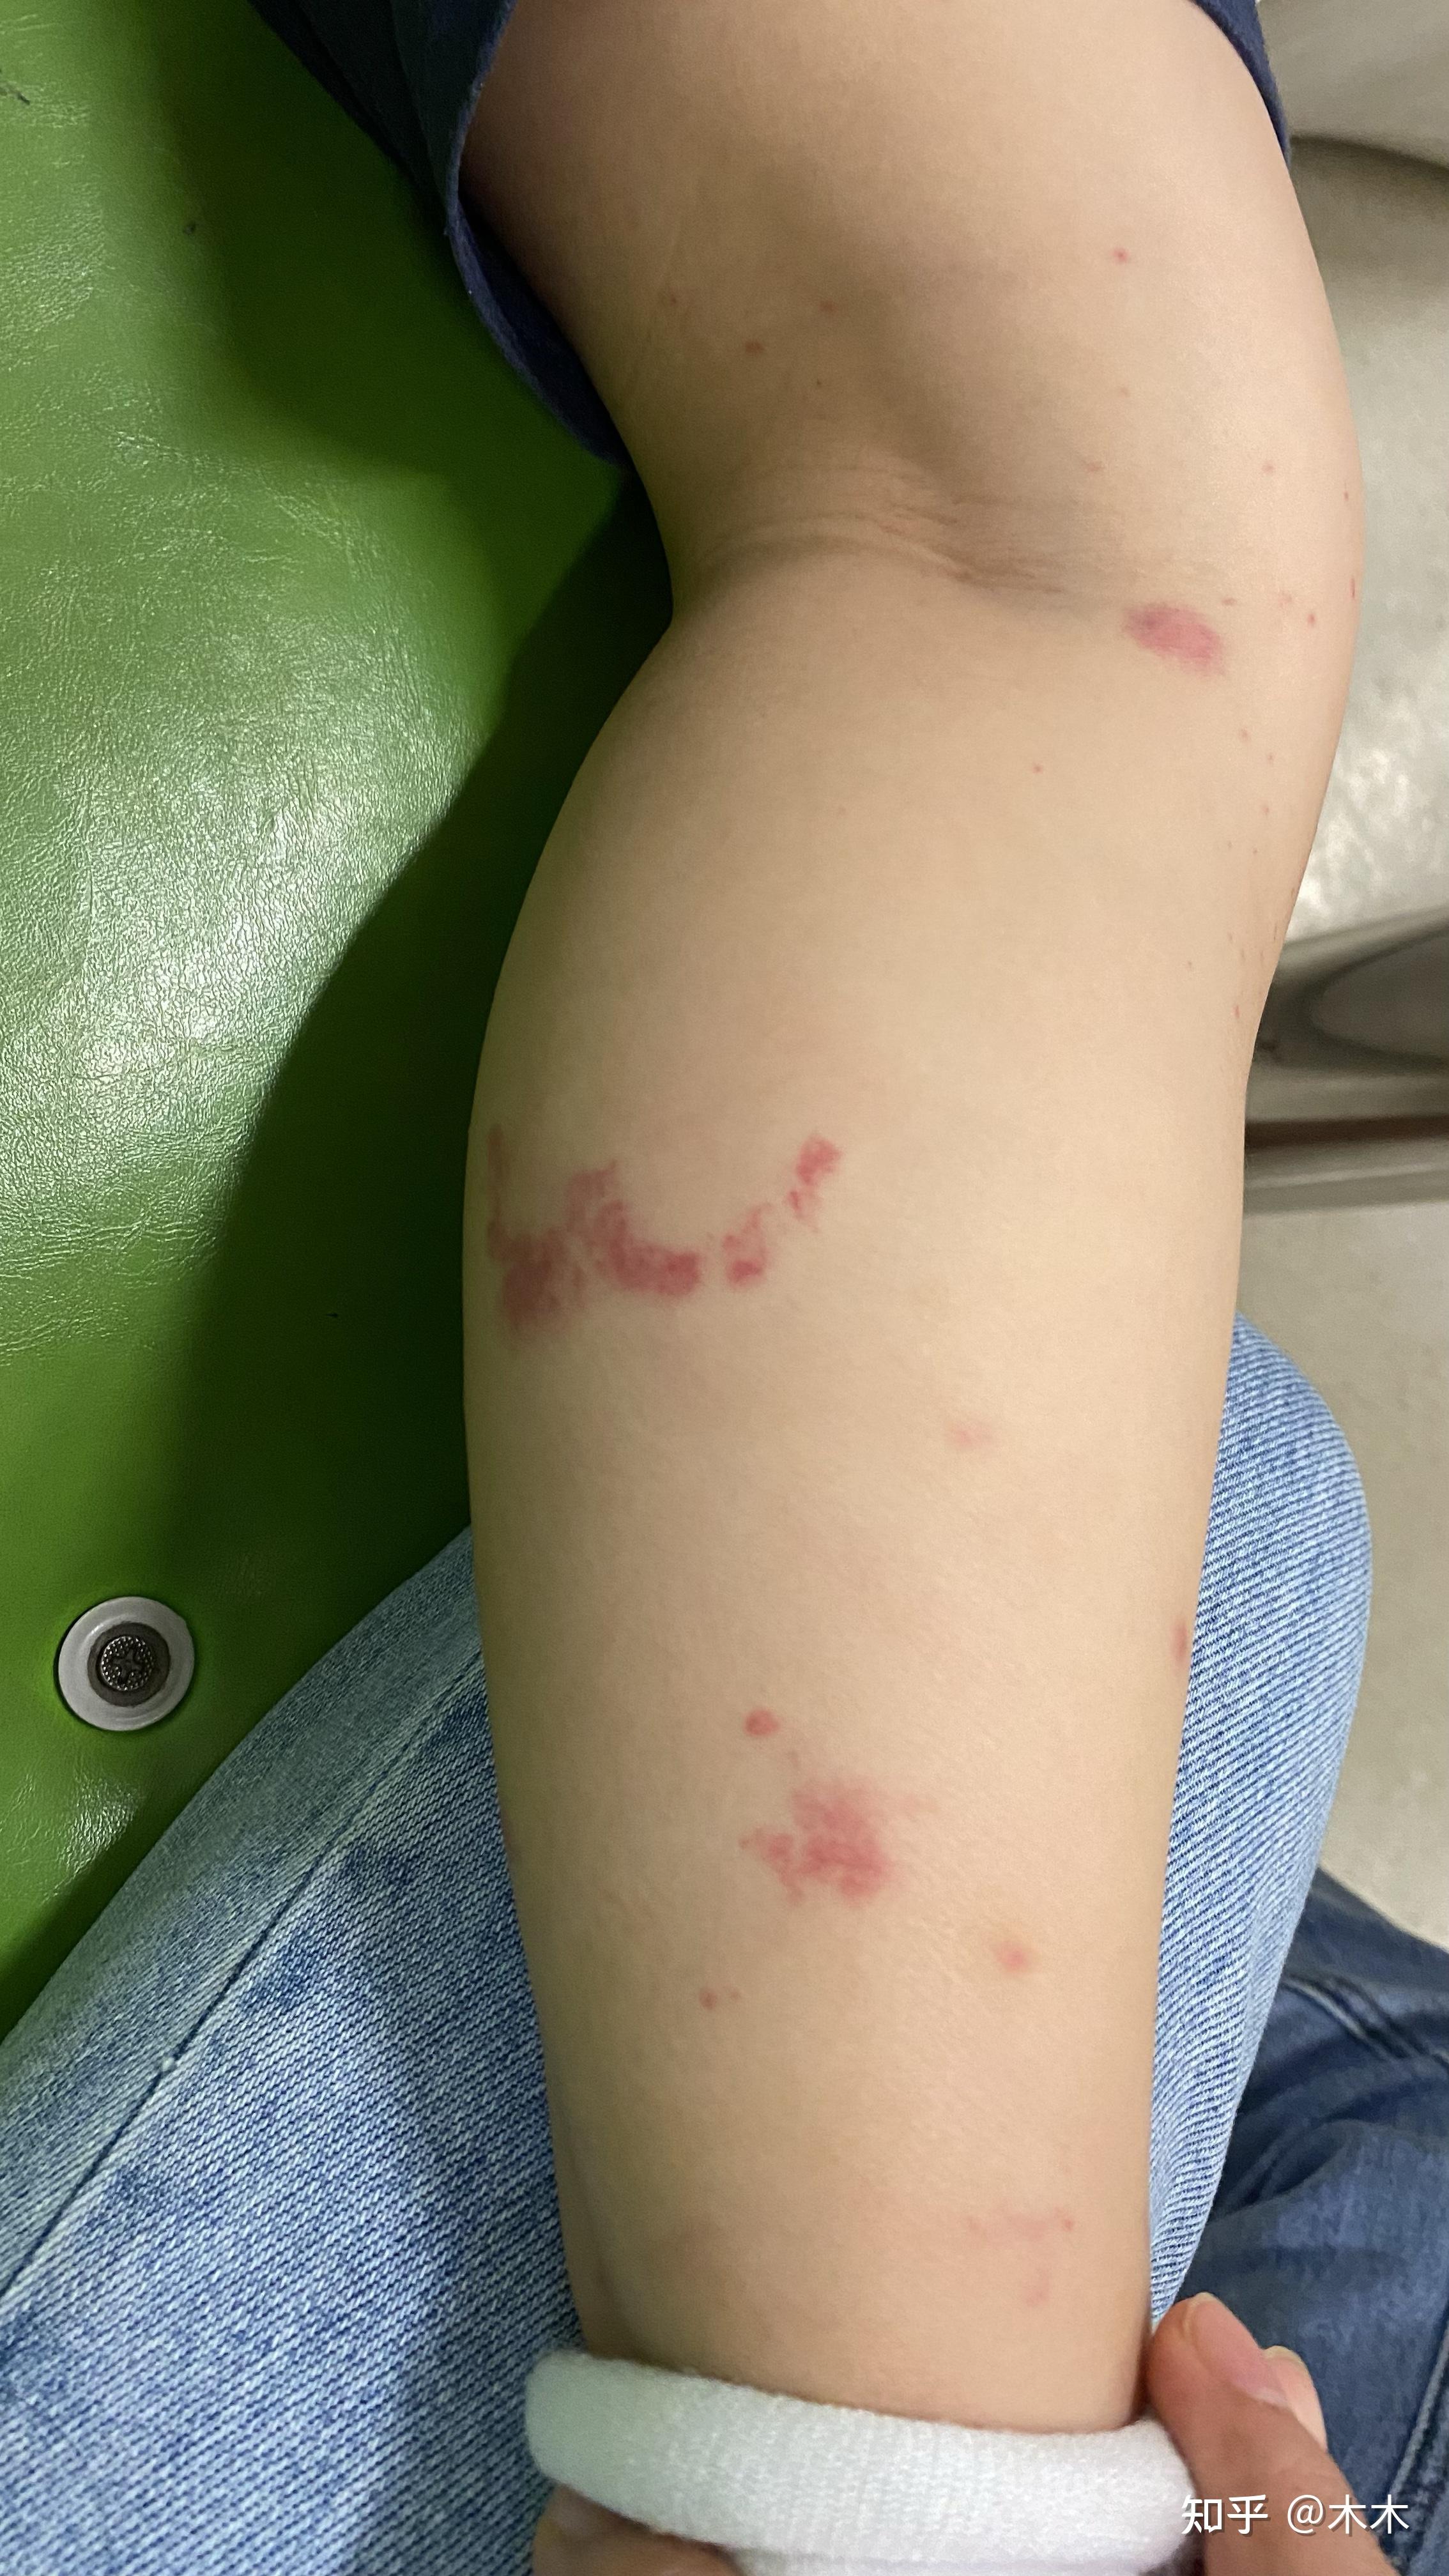 记录6岁孩子过敏性紫癜治疗过程